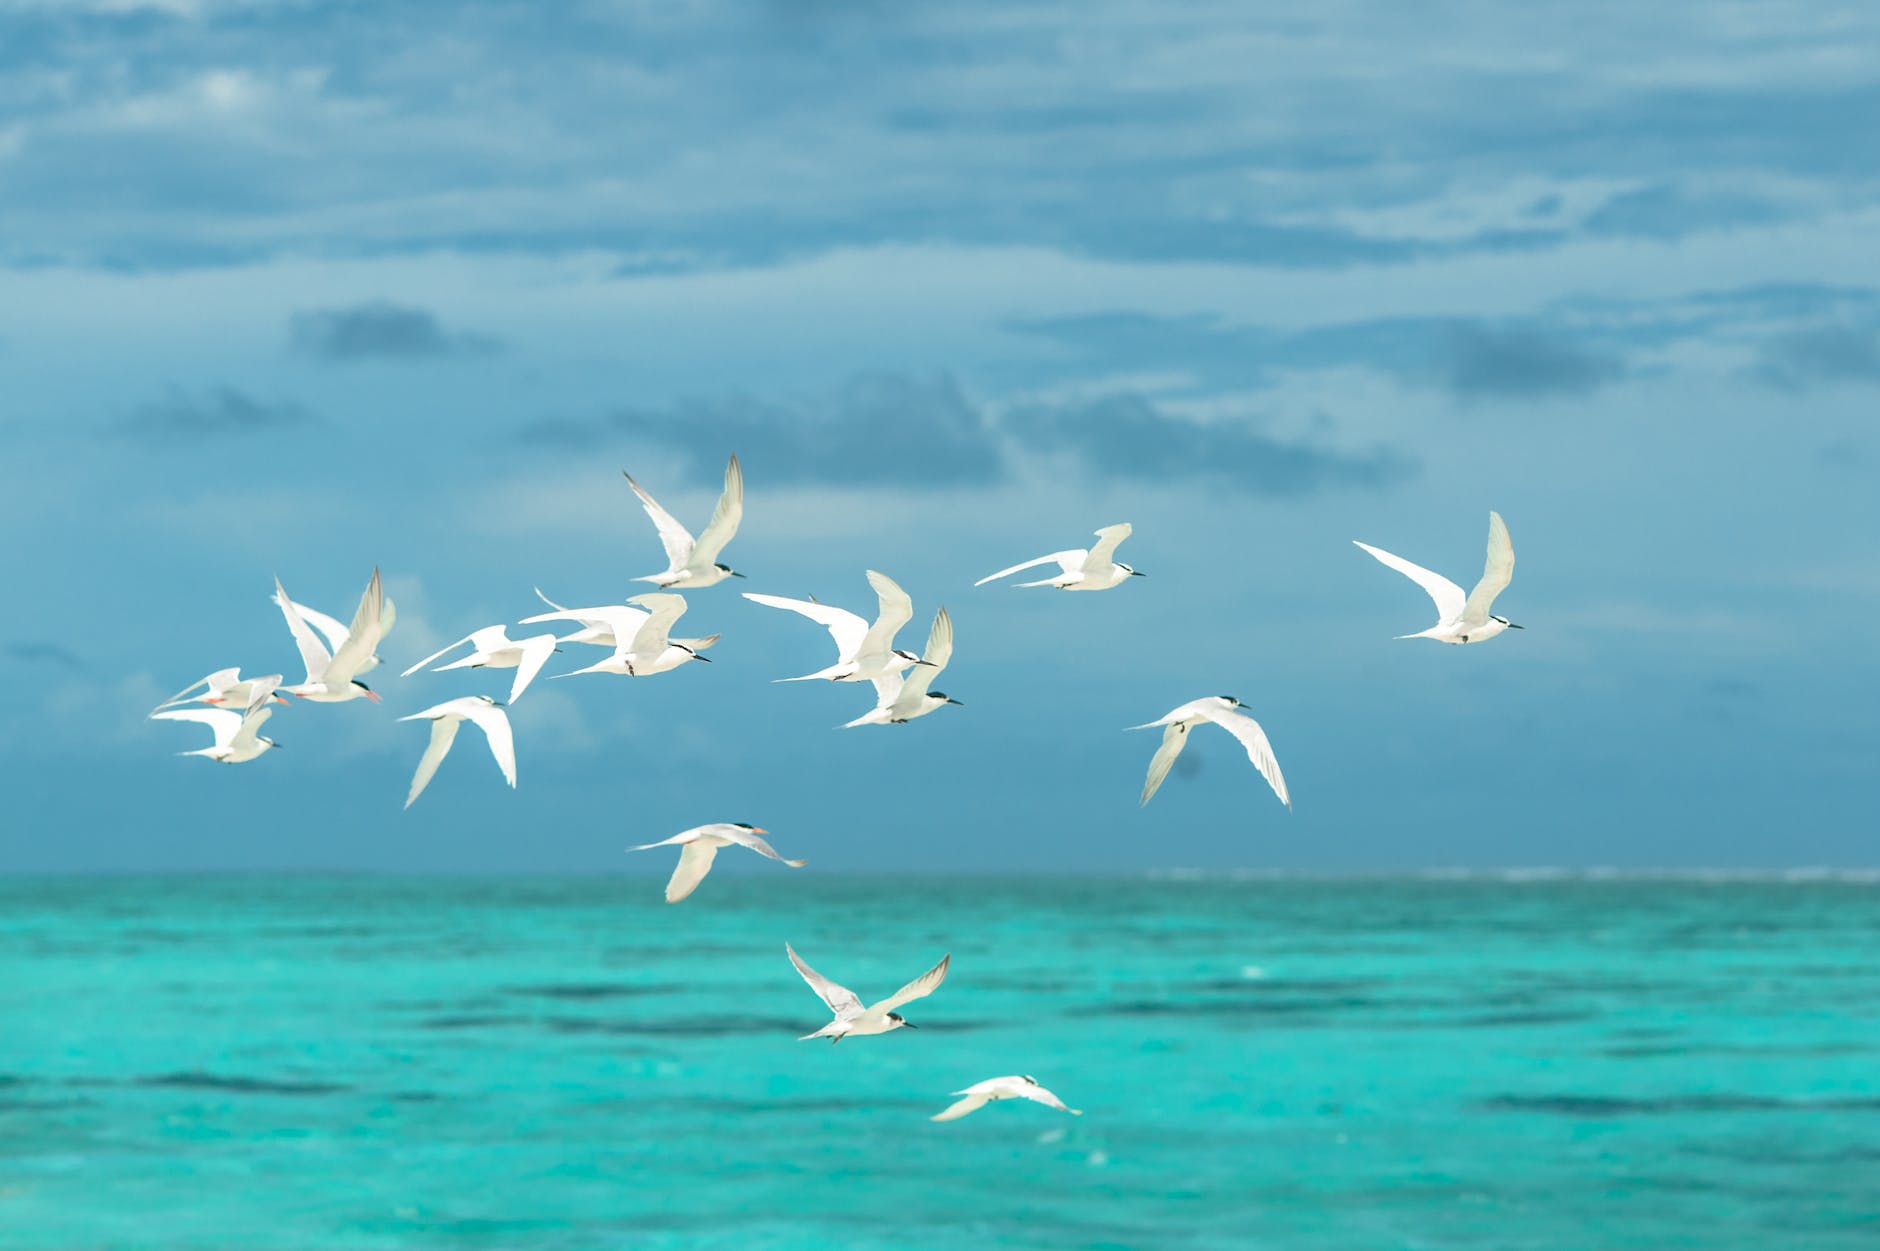 flock of white seagulls flying over the ocean